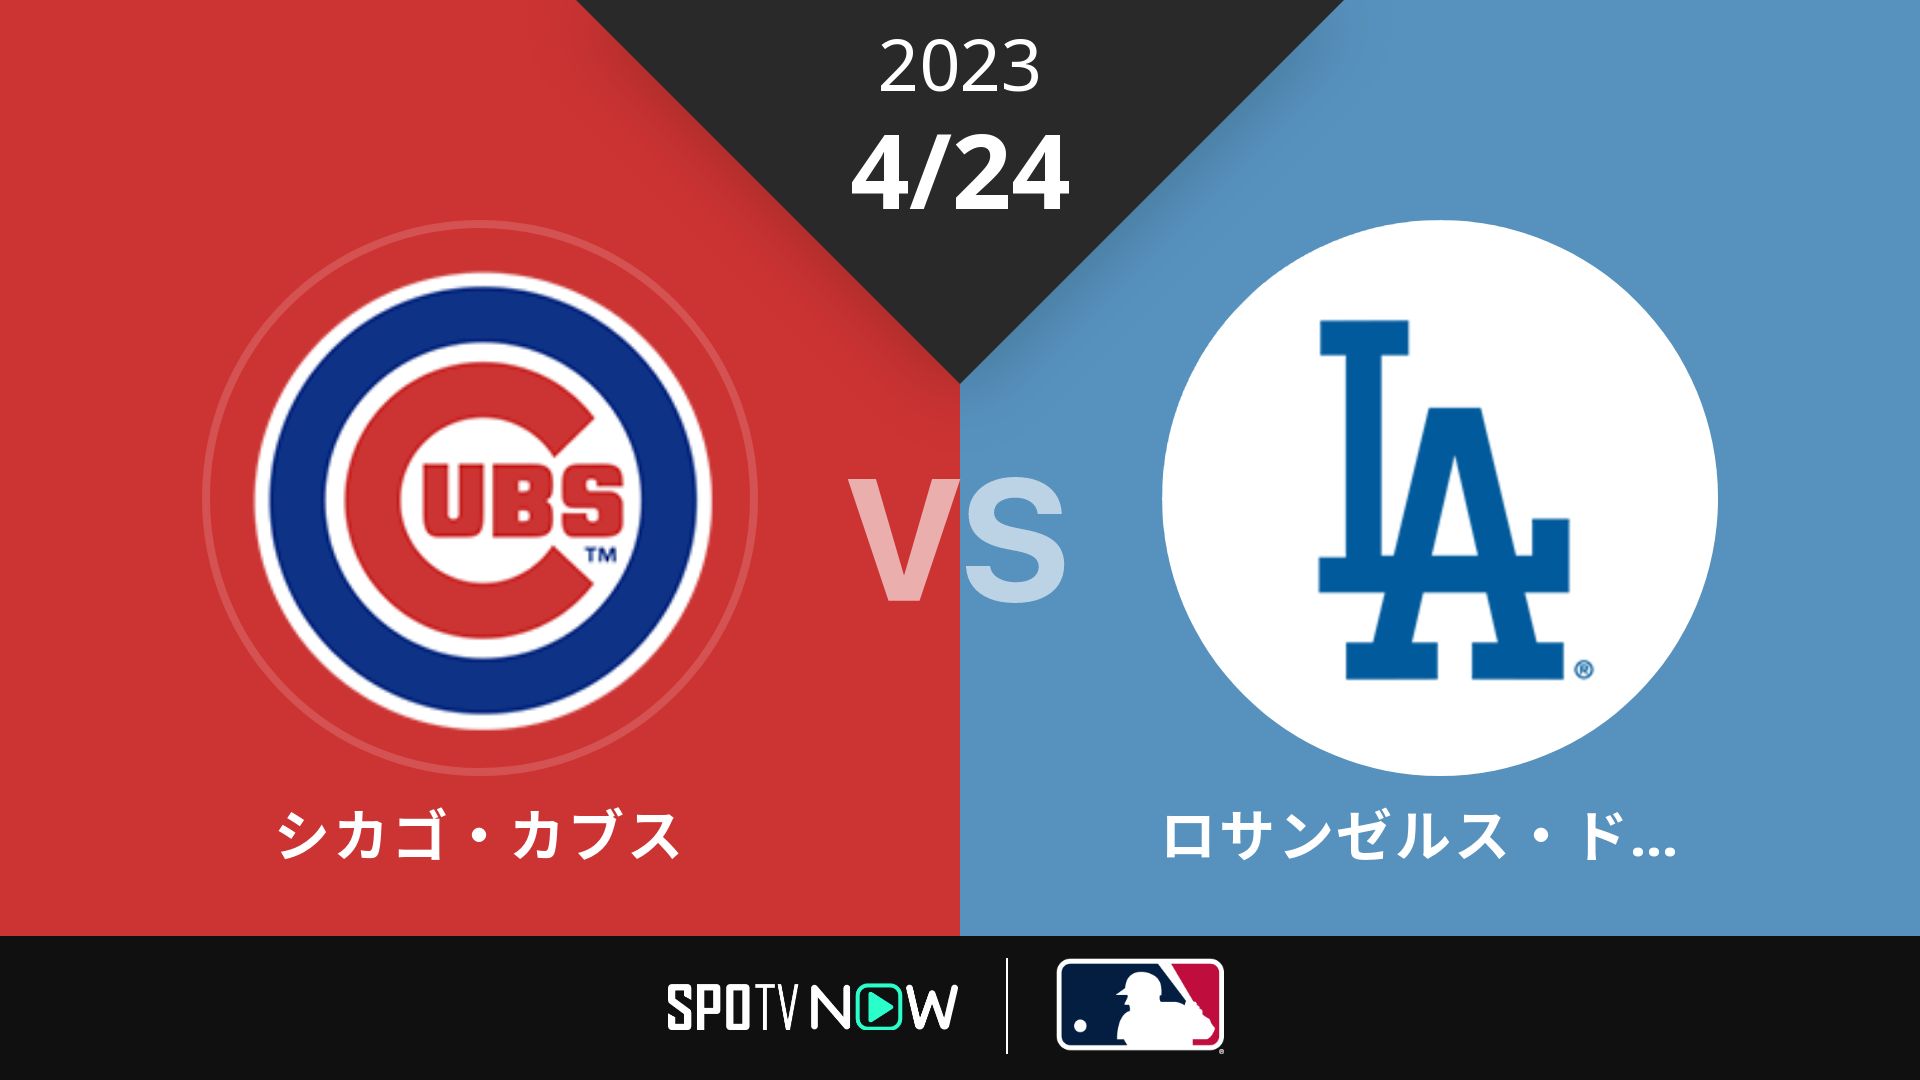 2023/4/24 カブス vs ドジャース [MLB]